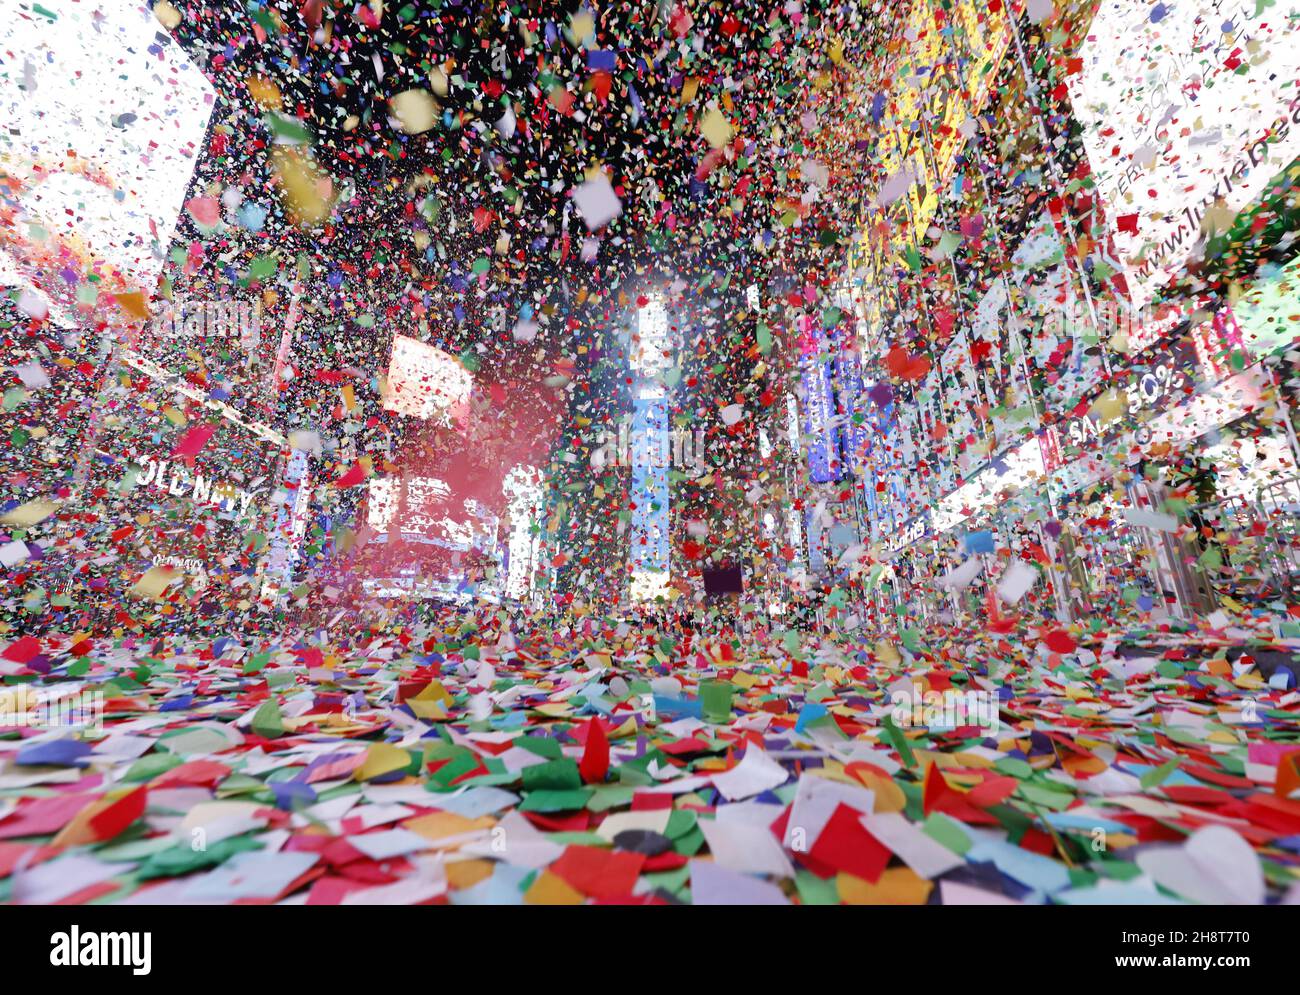 New York, Stati Uniti. 2 dicembre 2021. I confetti riempiono l'aria e i fuochi d'artificio esplodono su One Times Square, che è vuota e chiusa al pubblico a causa della pandemia del coronavirus dopo la mezzanotte della vigilia di Capodanno, festa di Capodanno a New York City venerdì 1 gennaio 2021. A causa della pandemia COVID-19 in corso, la vigilia di Capodanno 2021 a Times Square non è stata aperta al pubblico quest'anno. Foto di John Angelillo/UPI Credit: UPI/Alamy Live News Foto Stock